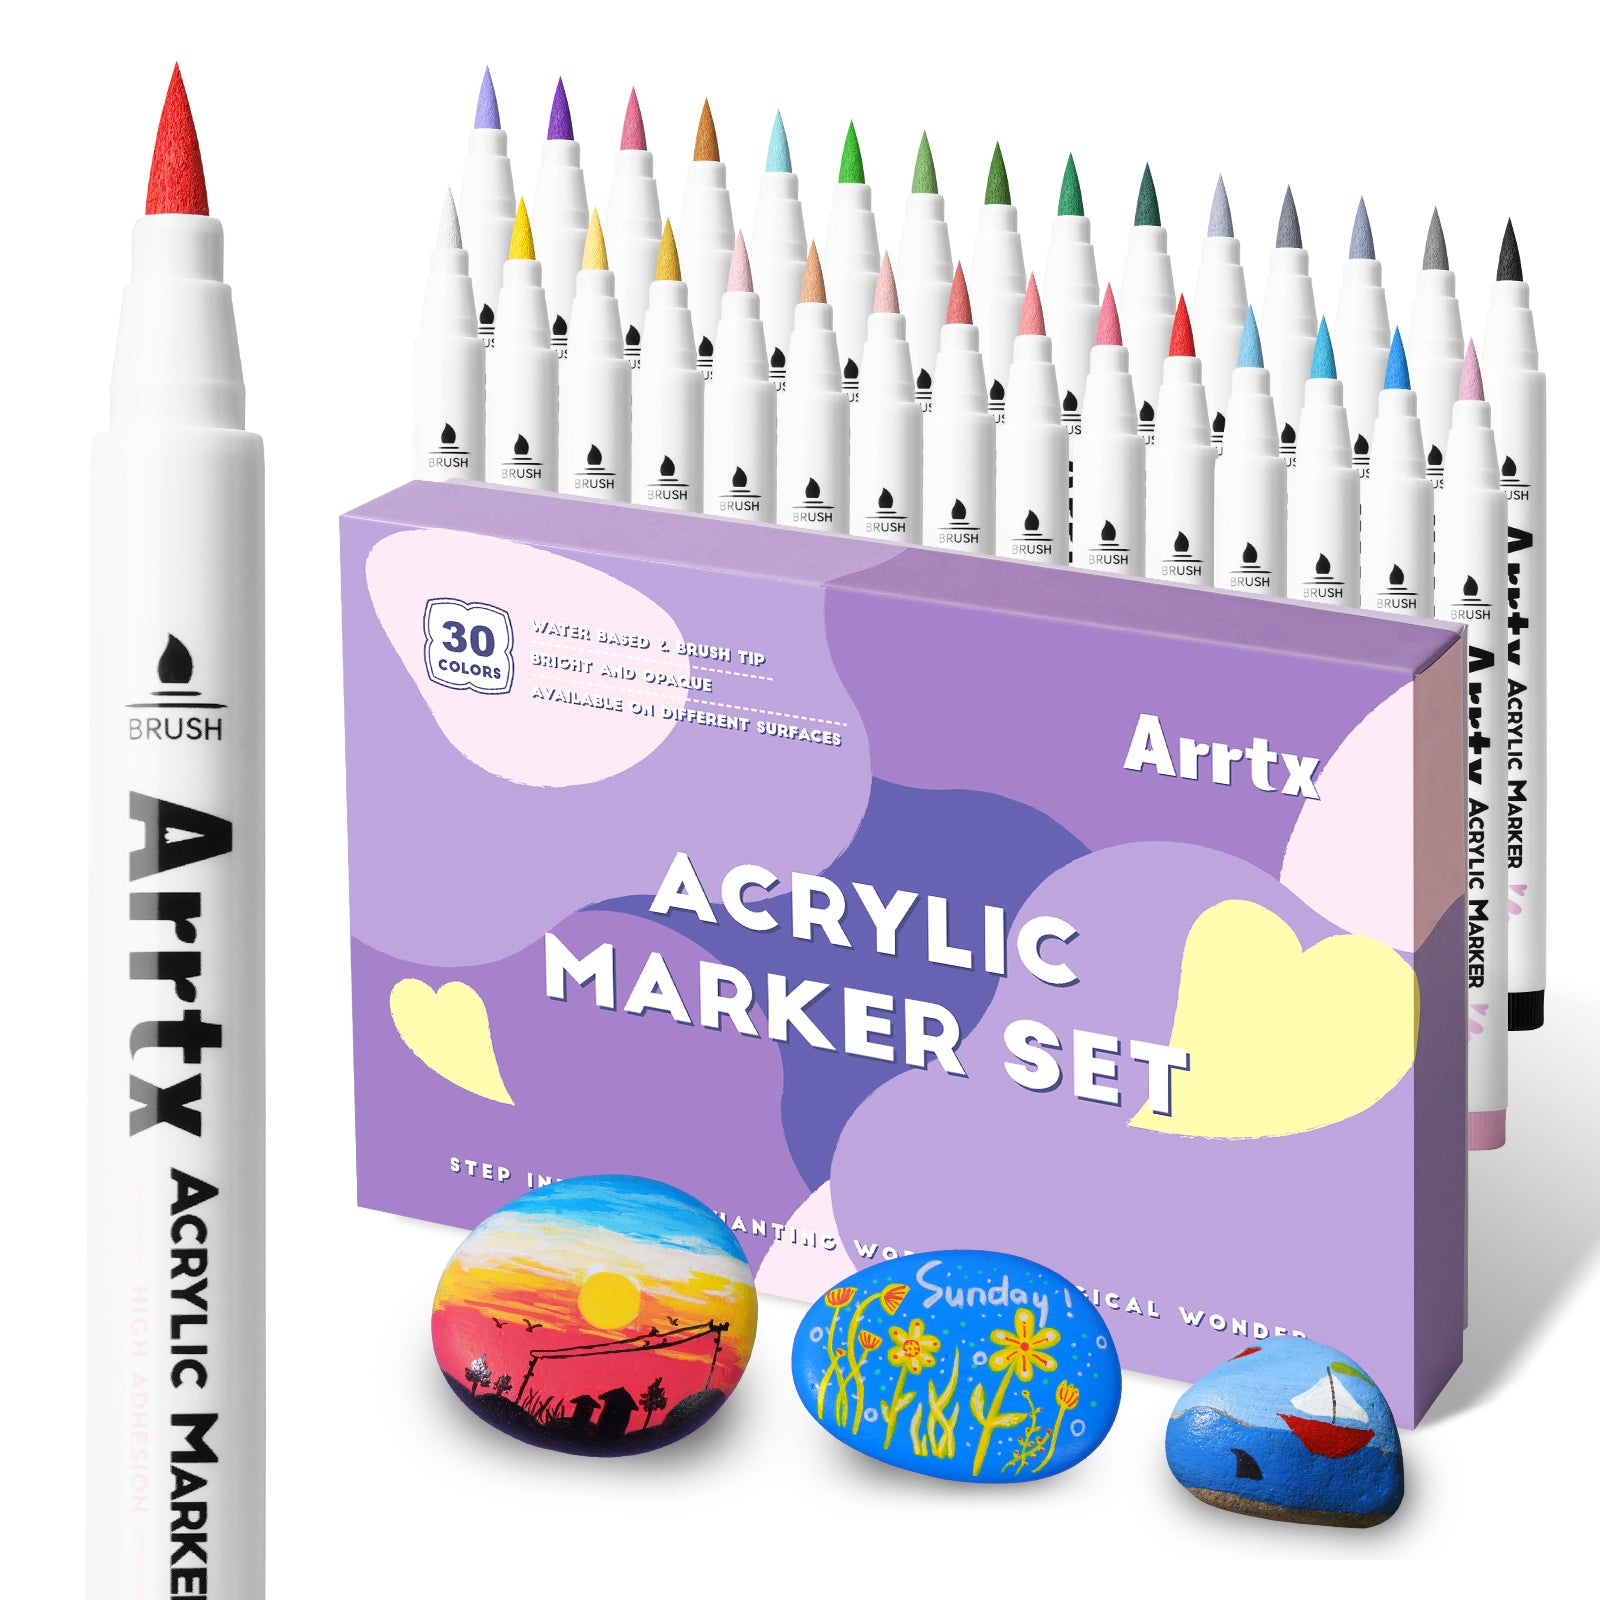 Arrtx 30 Colors Acrylic Paint Pens - 30A